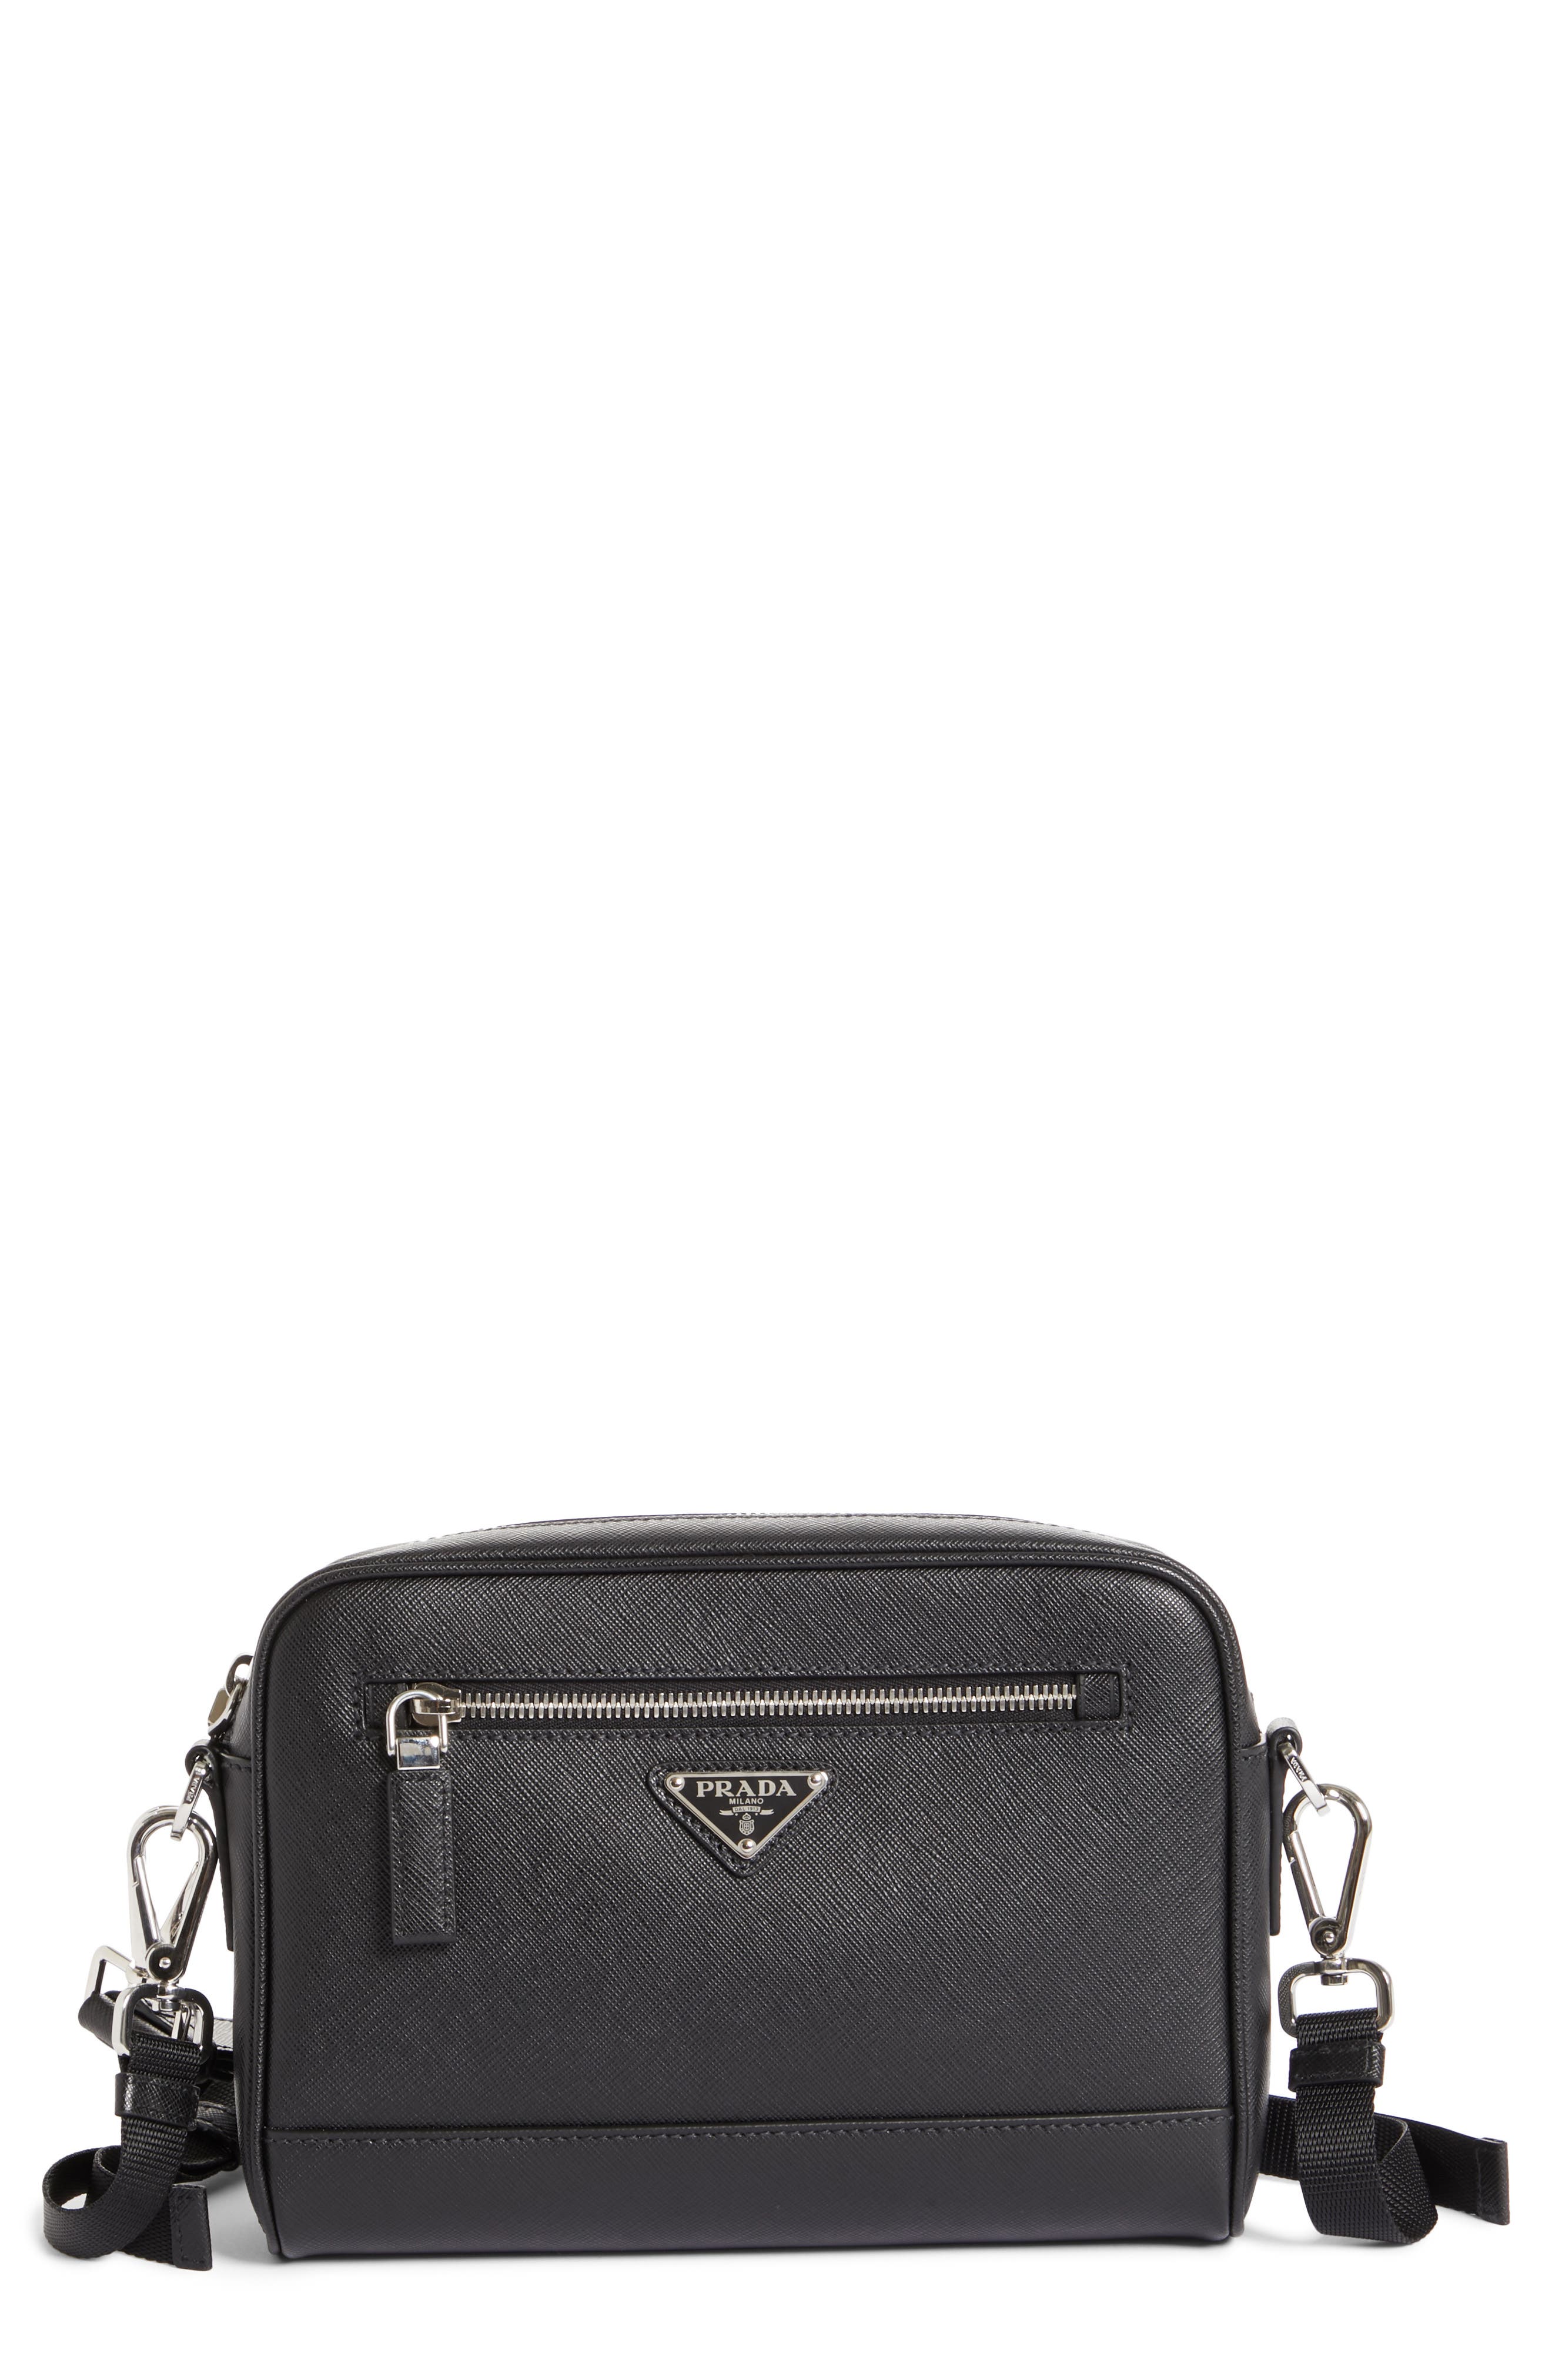 Prada | Saffiano Leather Travel Bag 